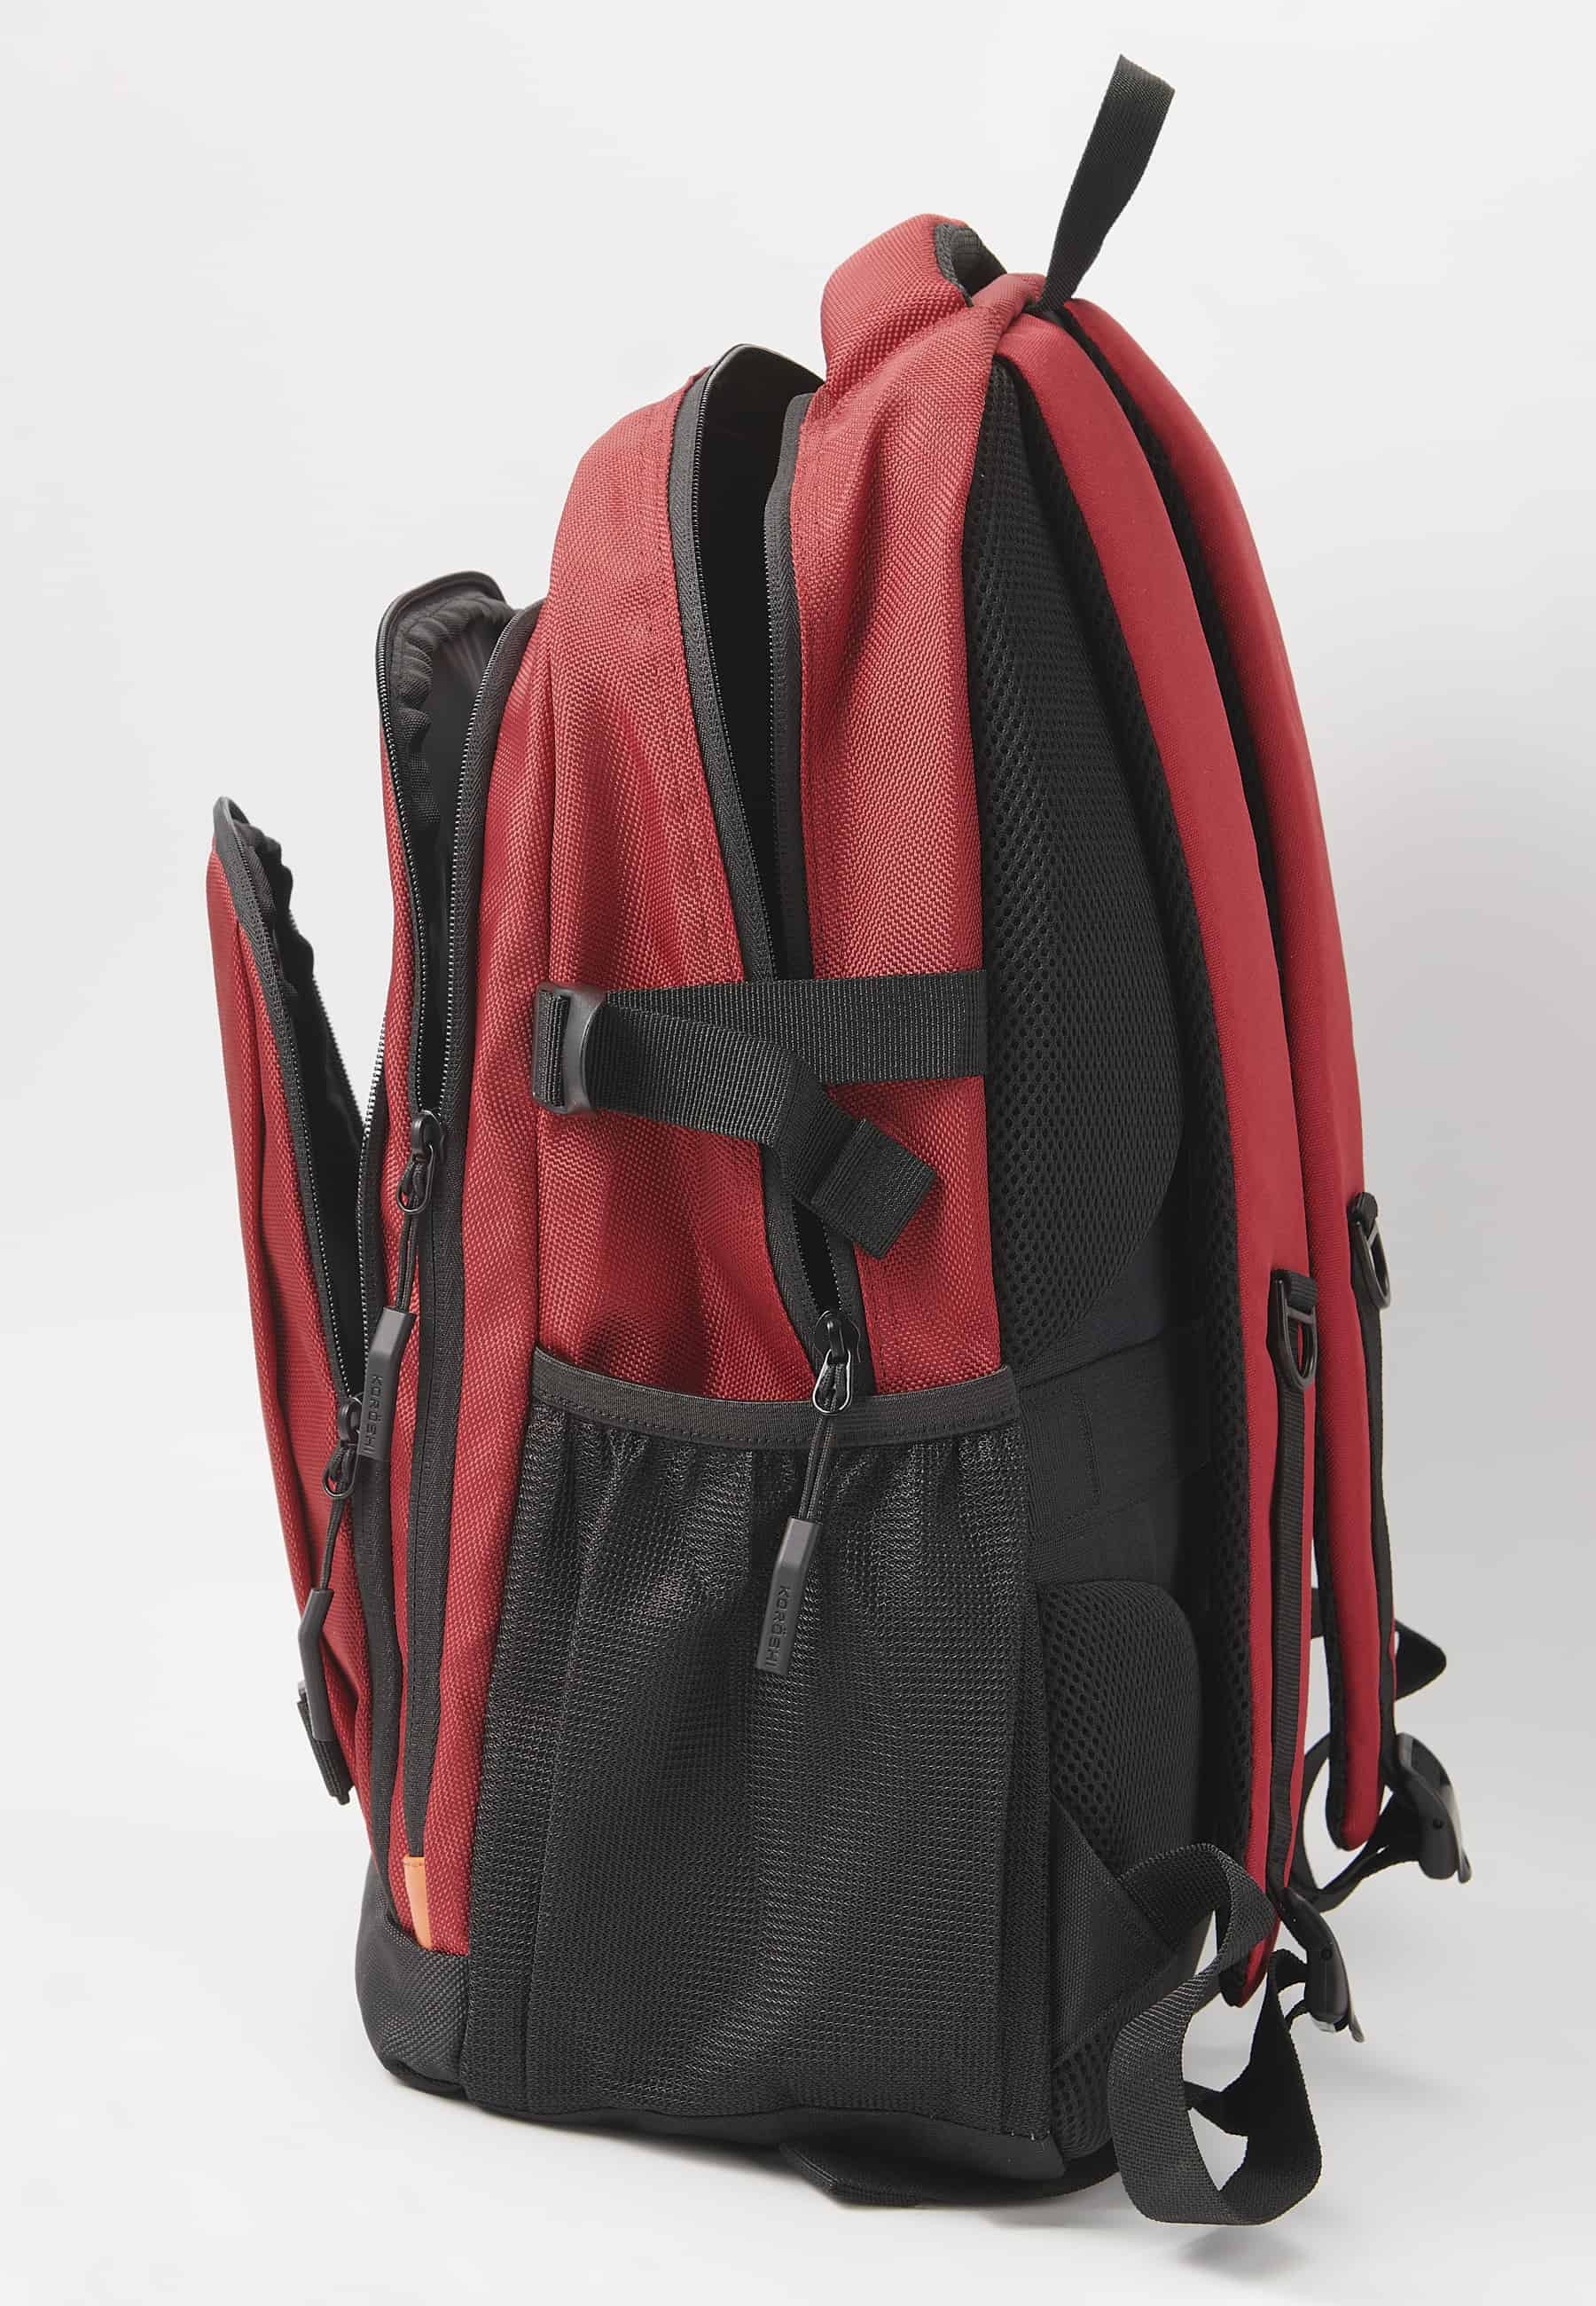 Mochila Koröshi con tres compartimentos cerrados con cremallera, uno para portátil, con bolsillos interiores color Rojo